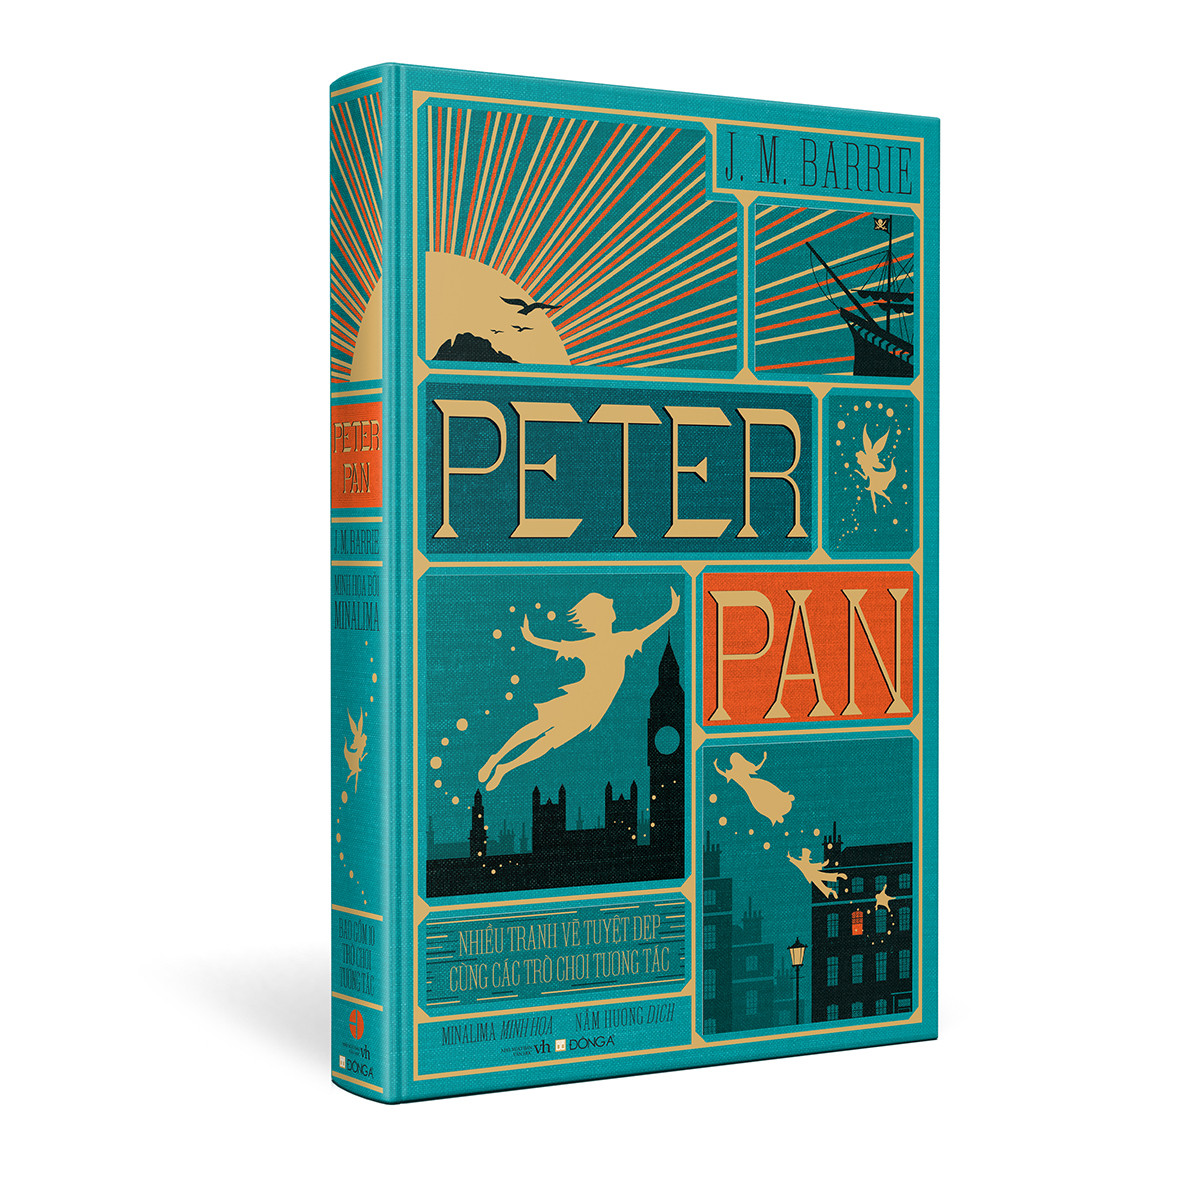 (Bìa Cứng) Peter Pan - Những Tranh Vẽ Tuyệt Đẹp Cùng Các Trò Chơi Tương Tác - J. M. Barrie - Nấm Hương dịch